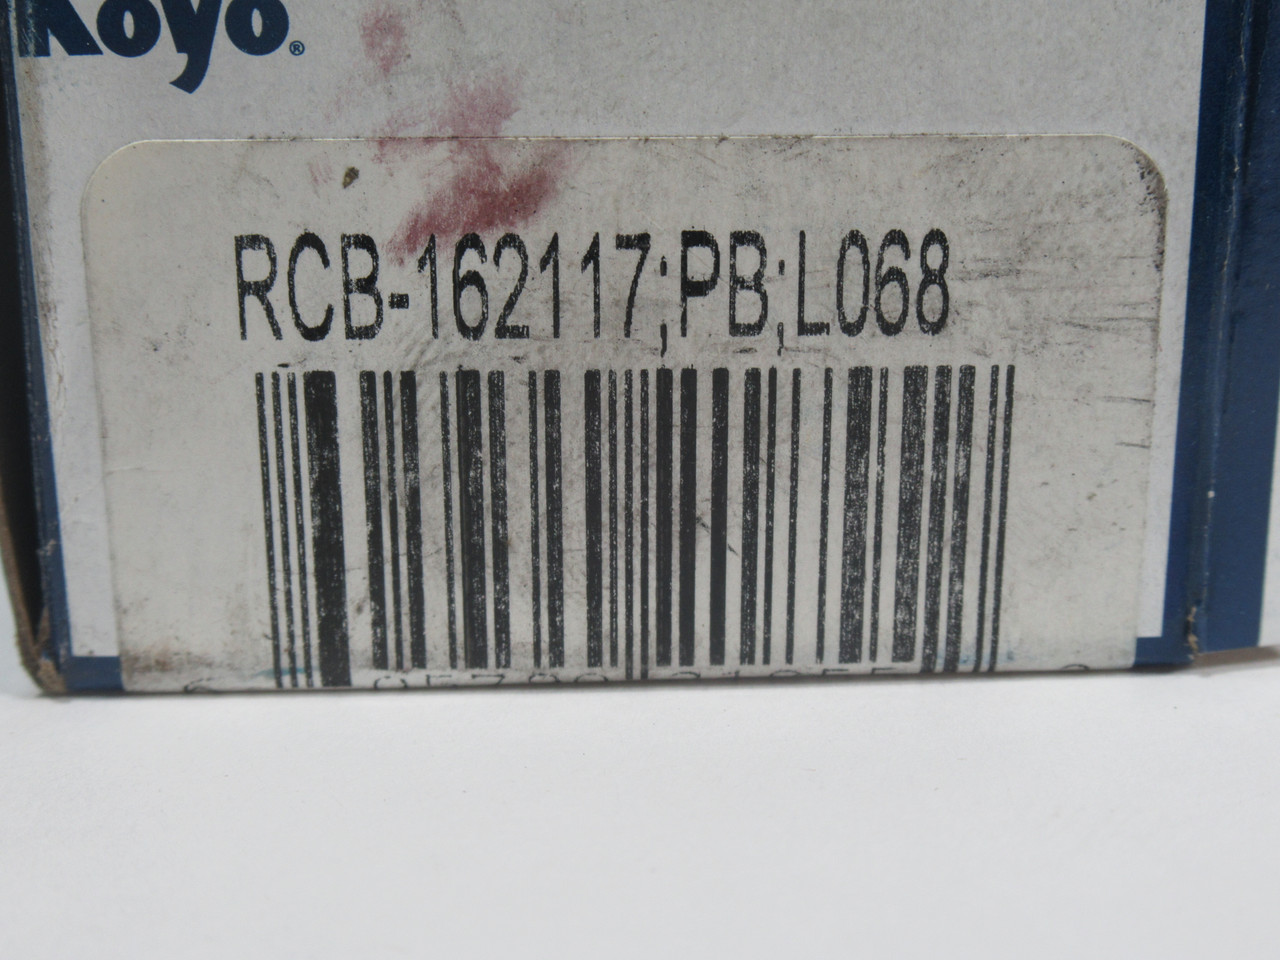 Koyo RCB-162117;PB;L068 Needle Roller Bearing 1"x5/16"-1 1/16" NEW